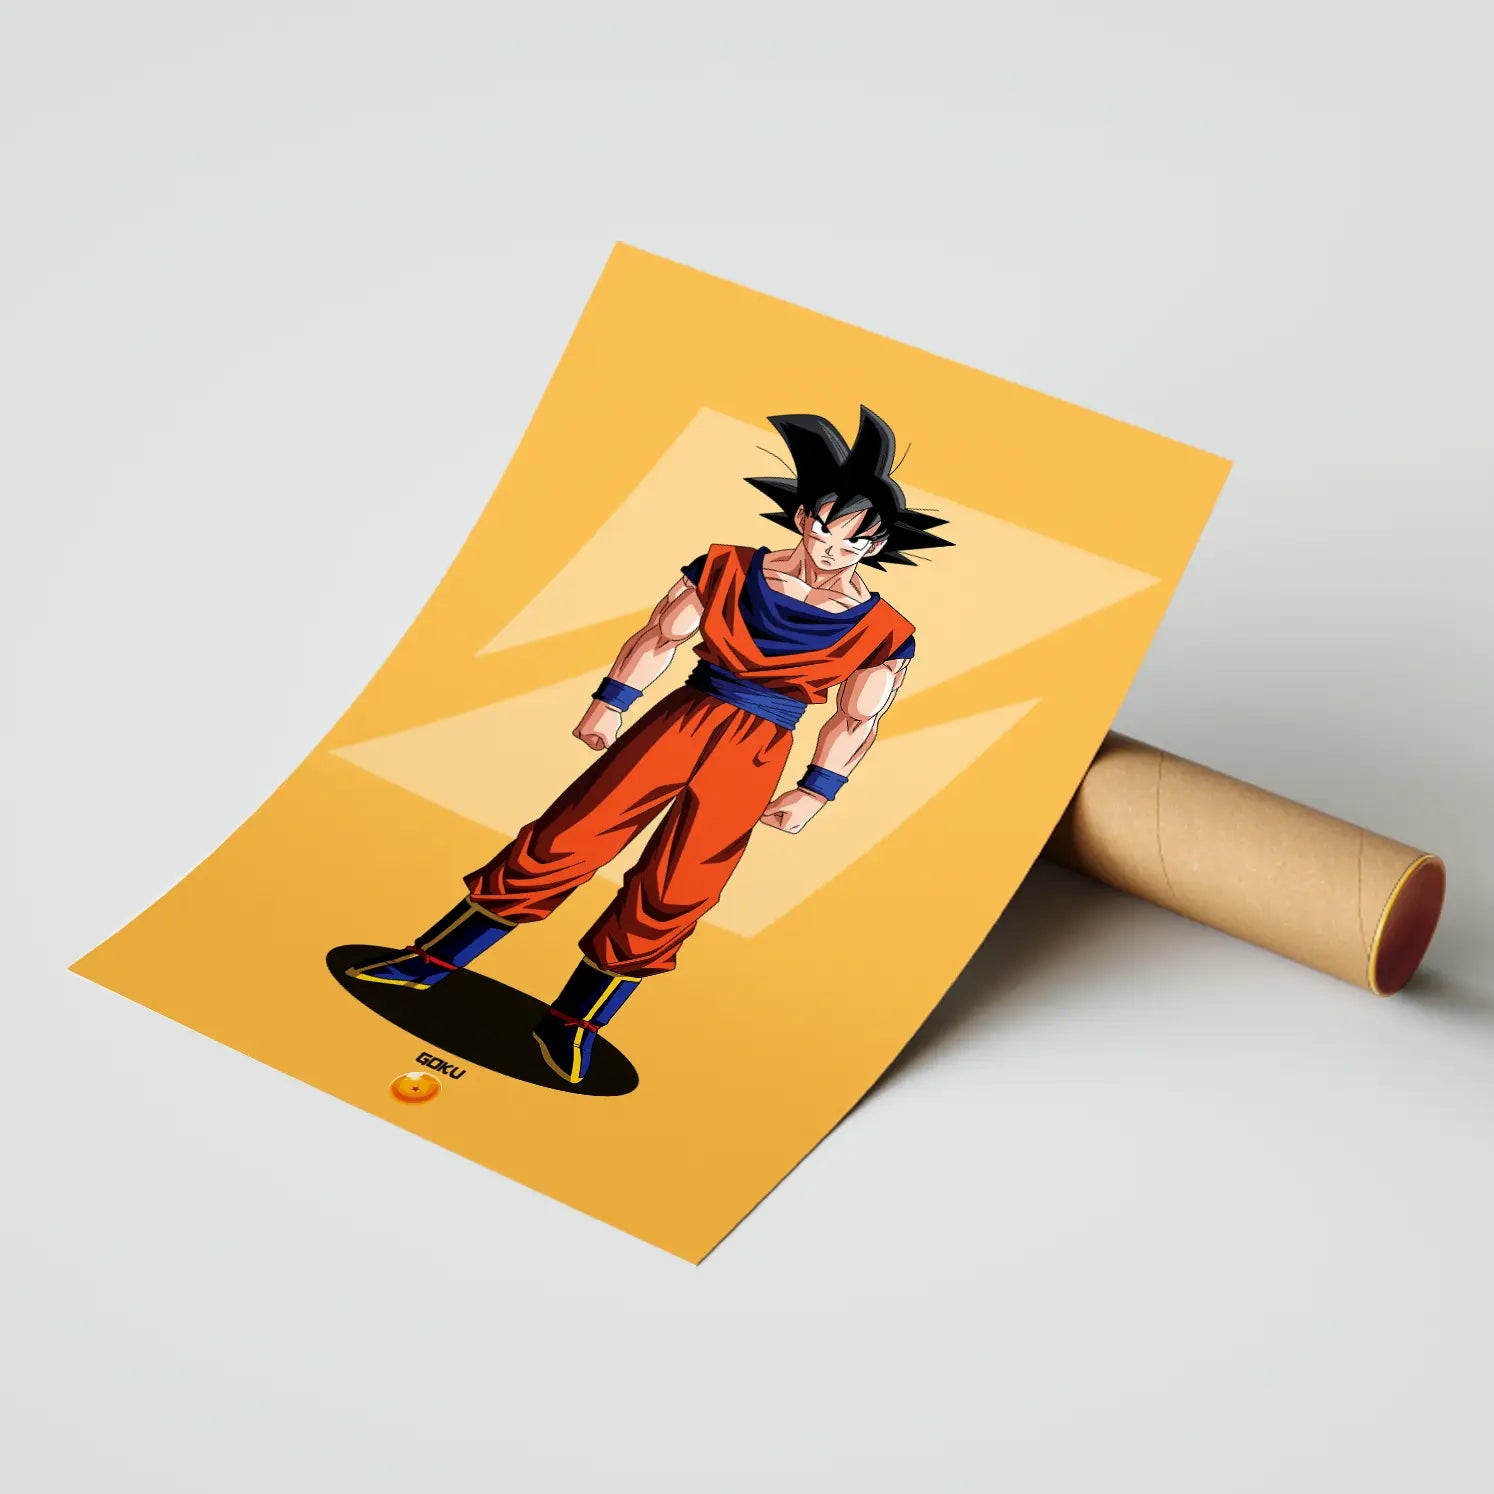 Goku Dragon Ball Z Poster | Frame | Canvas